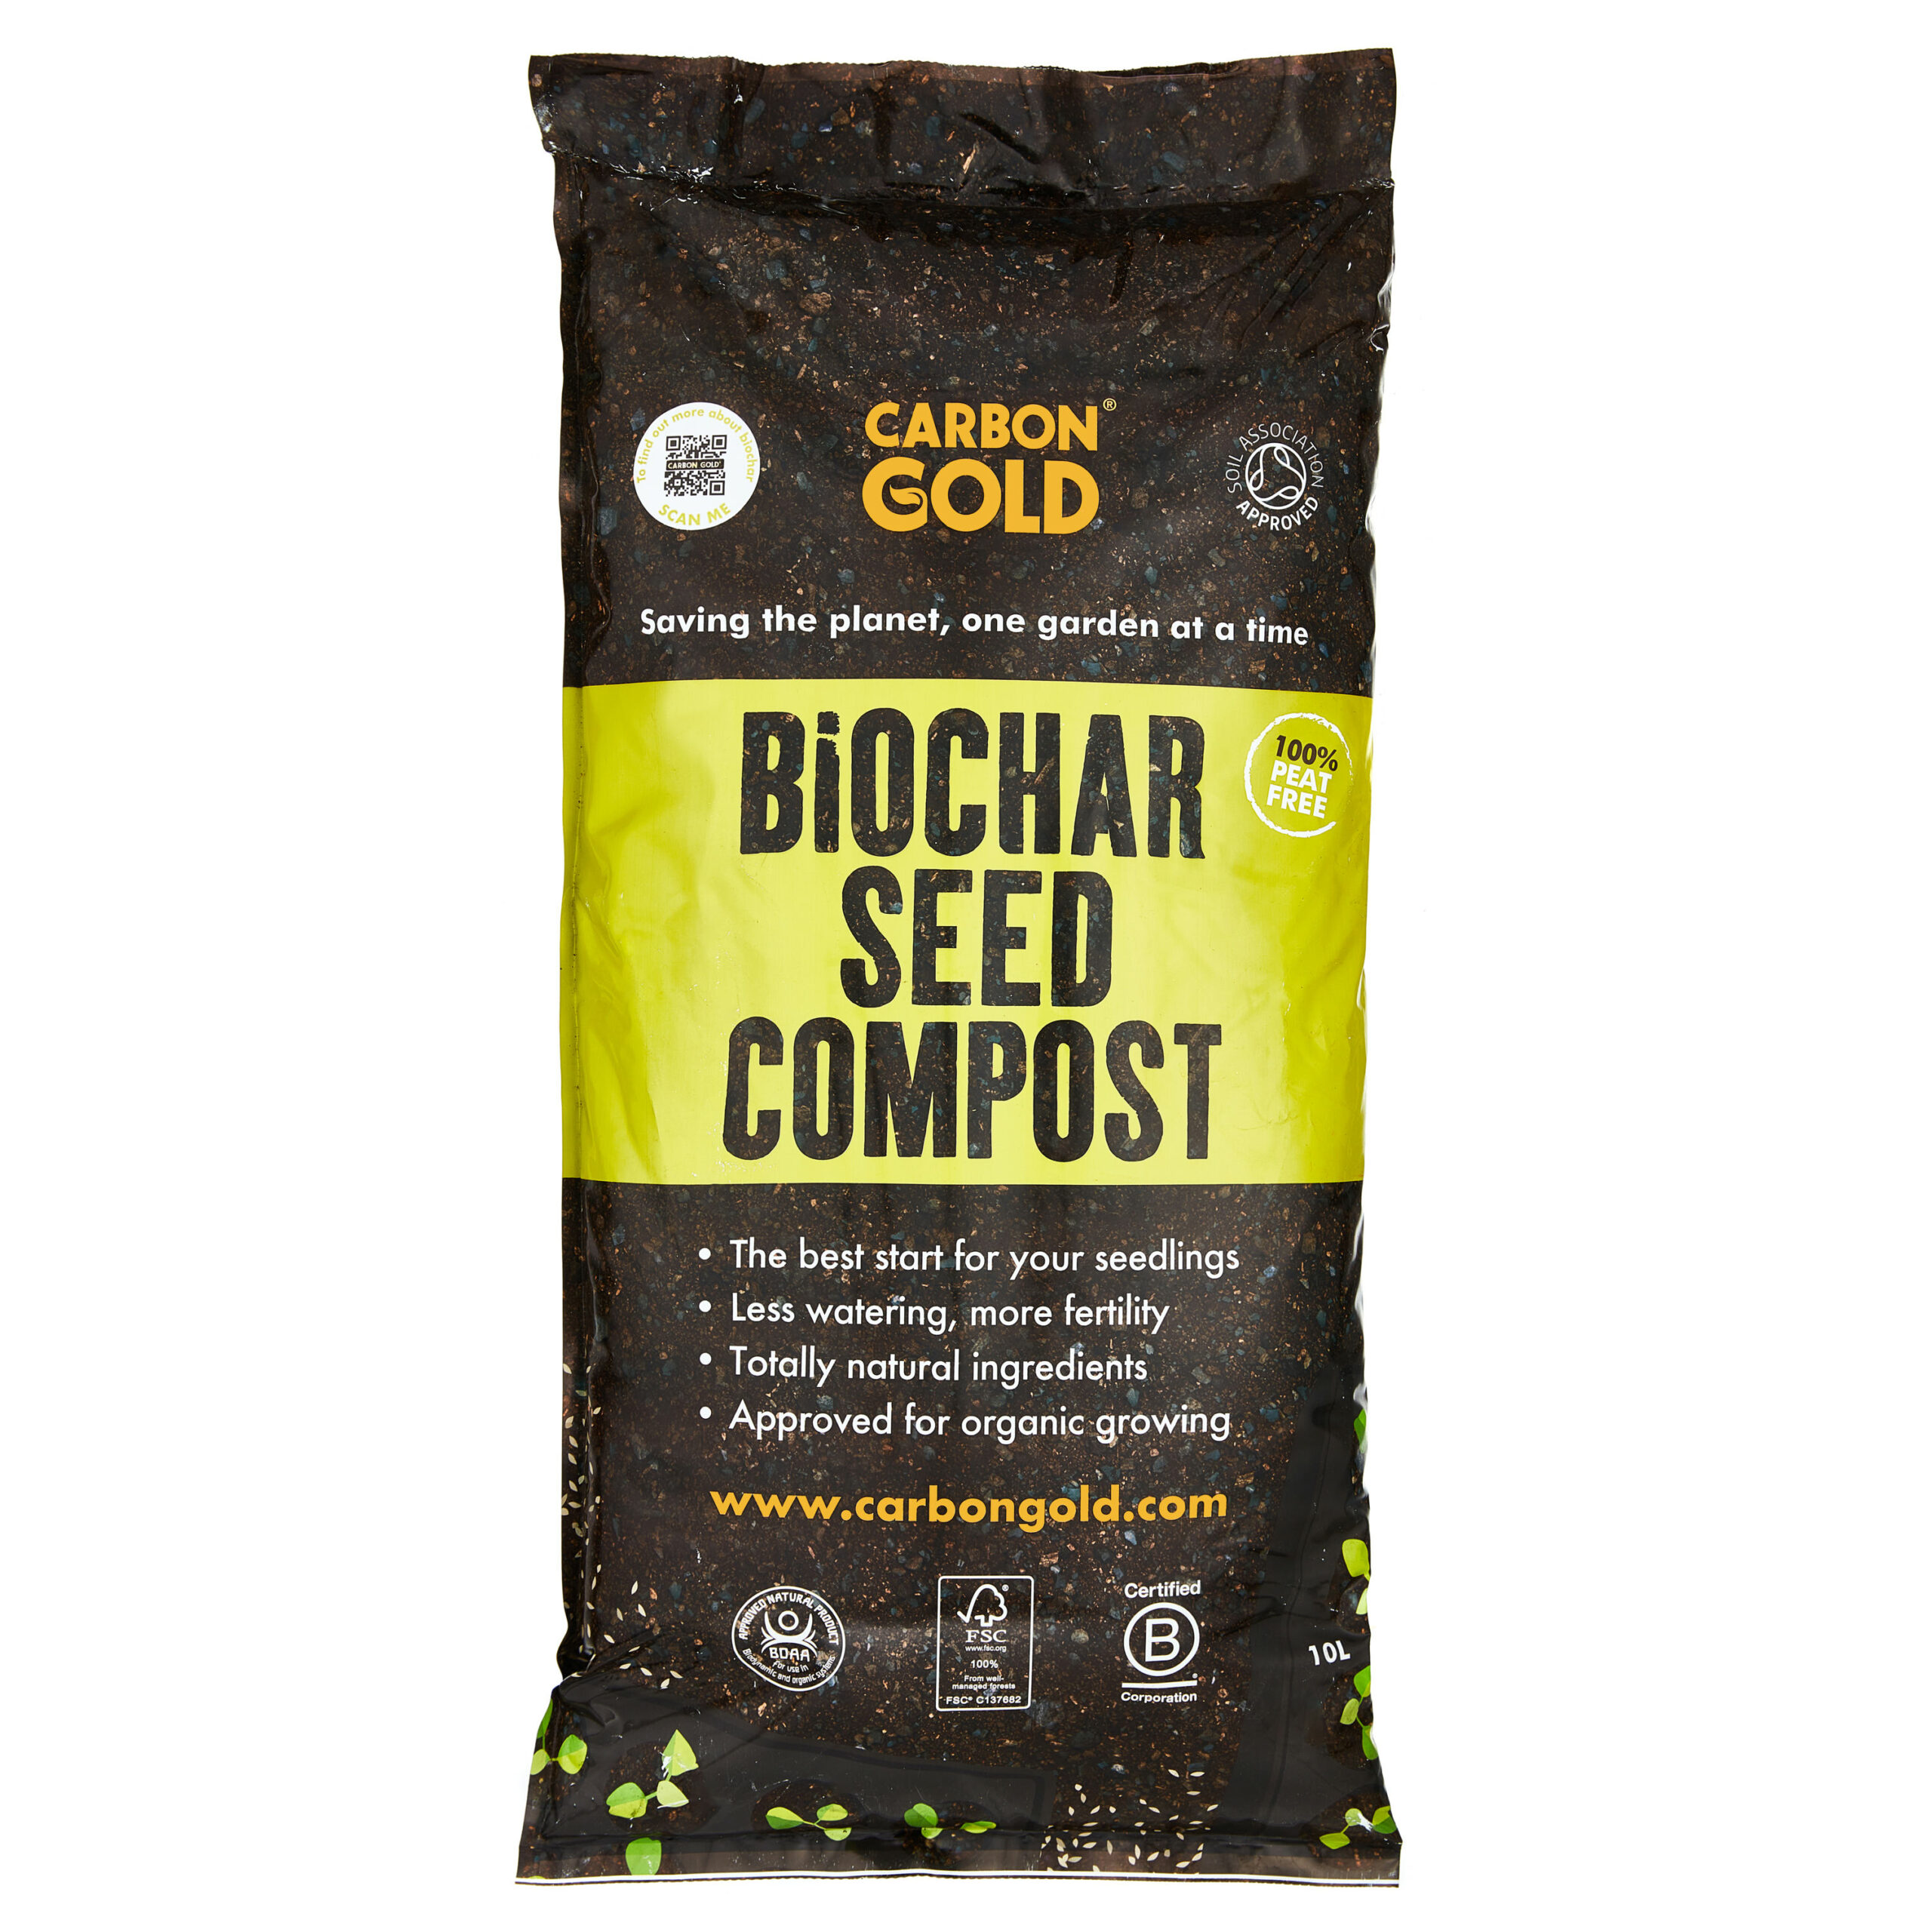 peatfree-Biochar Carbongold todo propósito Compost 3 X 20L Paquete